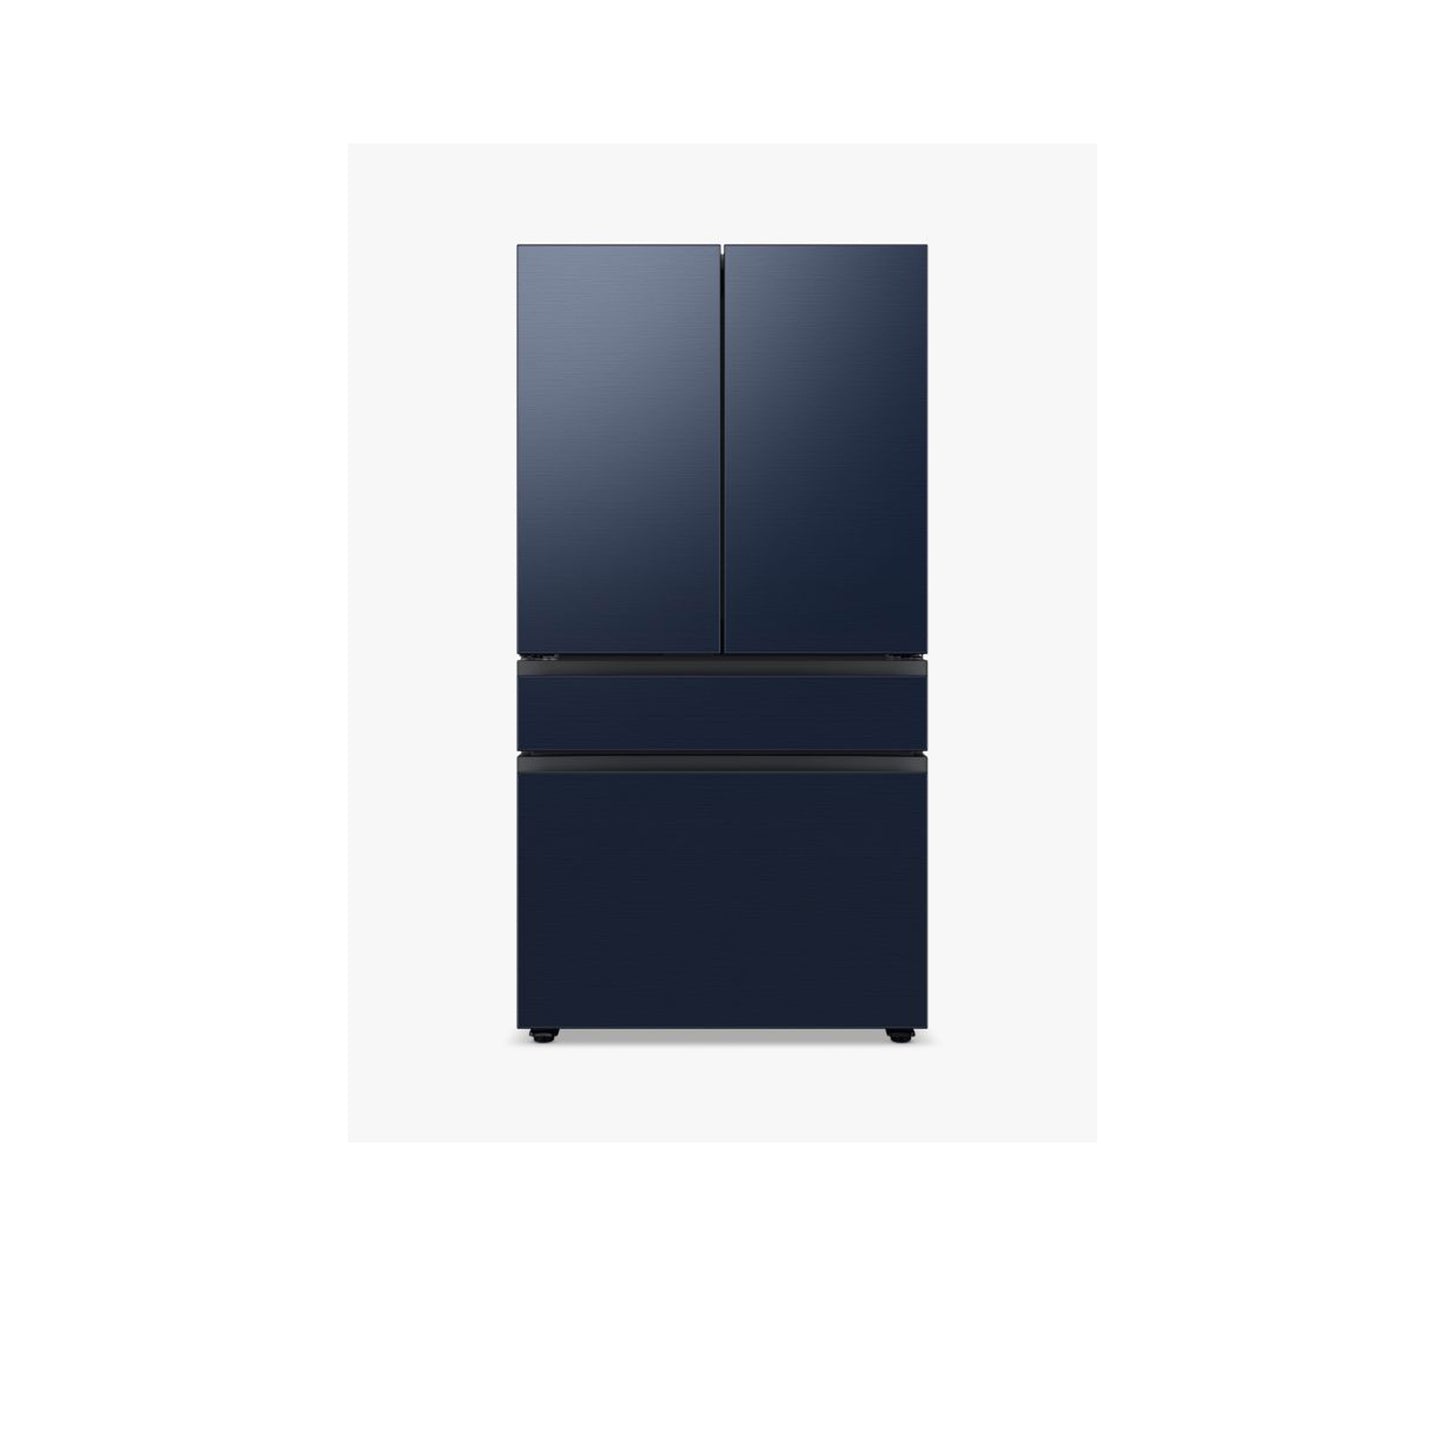 ثلاجة مخصصة بباب فرنسي بأربعة أبواب (23 قدمًا مكعبًا) مزودة بمركز المشروبات™ باللون الأبيض الزجاجي.